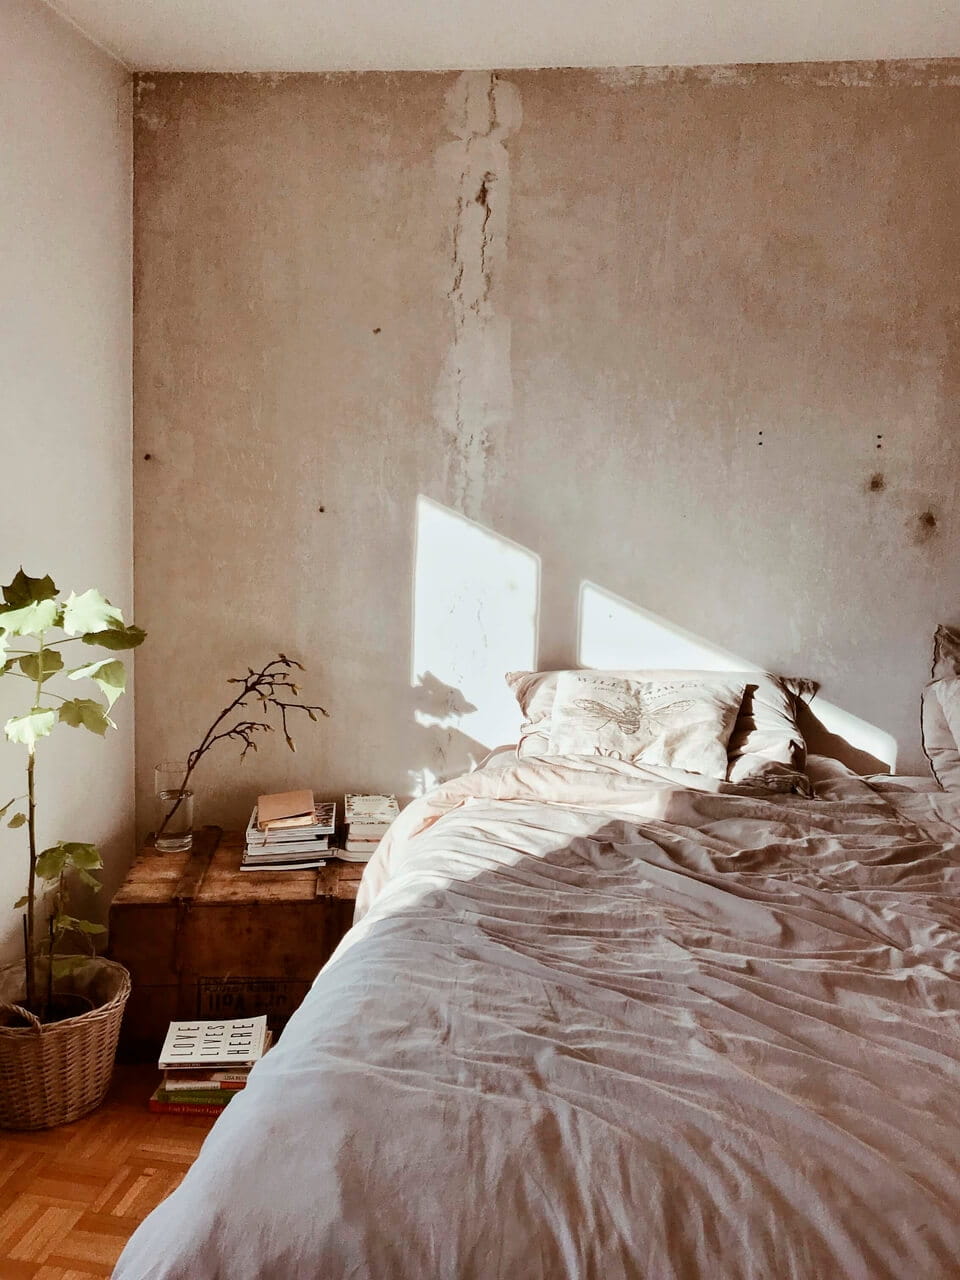 Gemütliches Schlafzimmer mit Sonnenlicht durch VELUX-Fenster, kuscheligem Bett, Büchern und Pflanze.